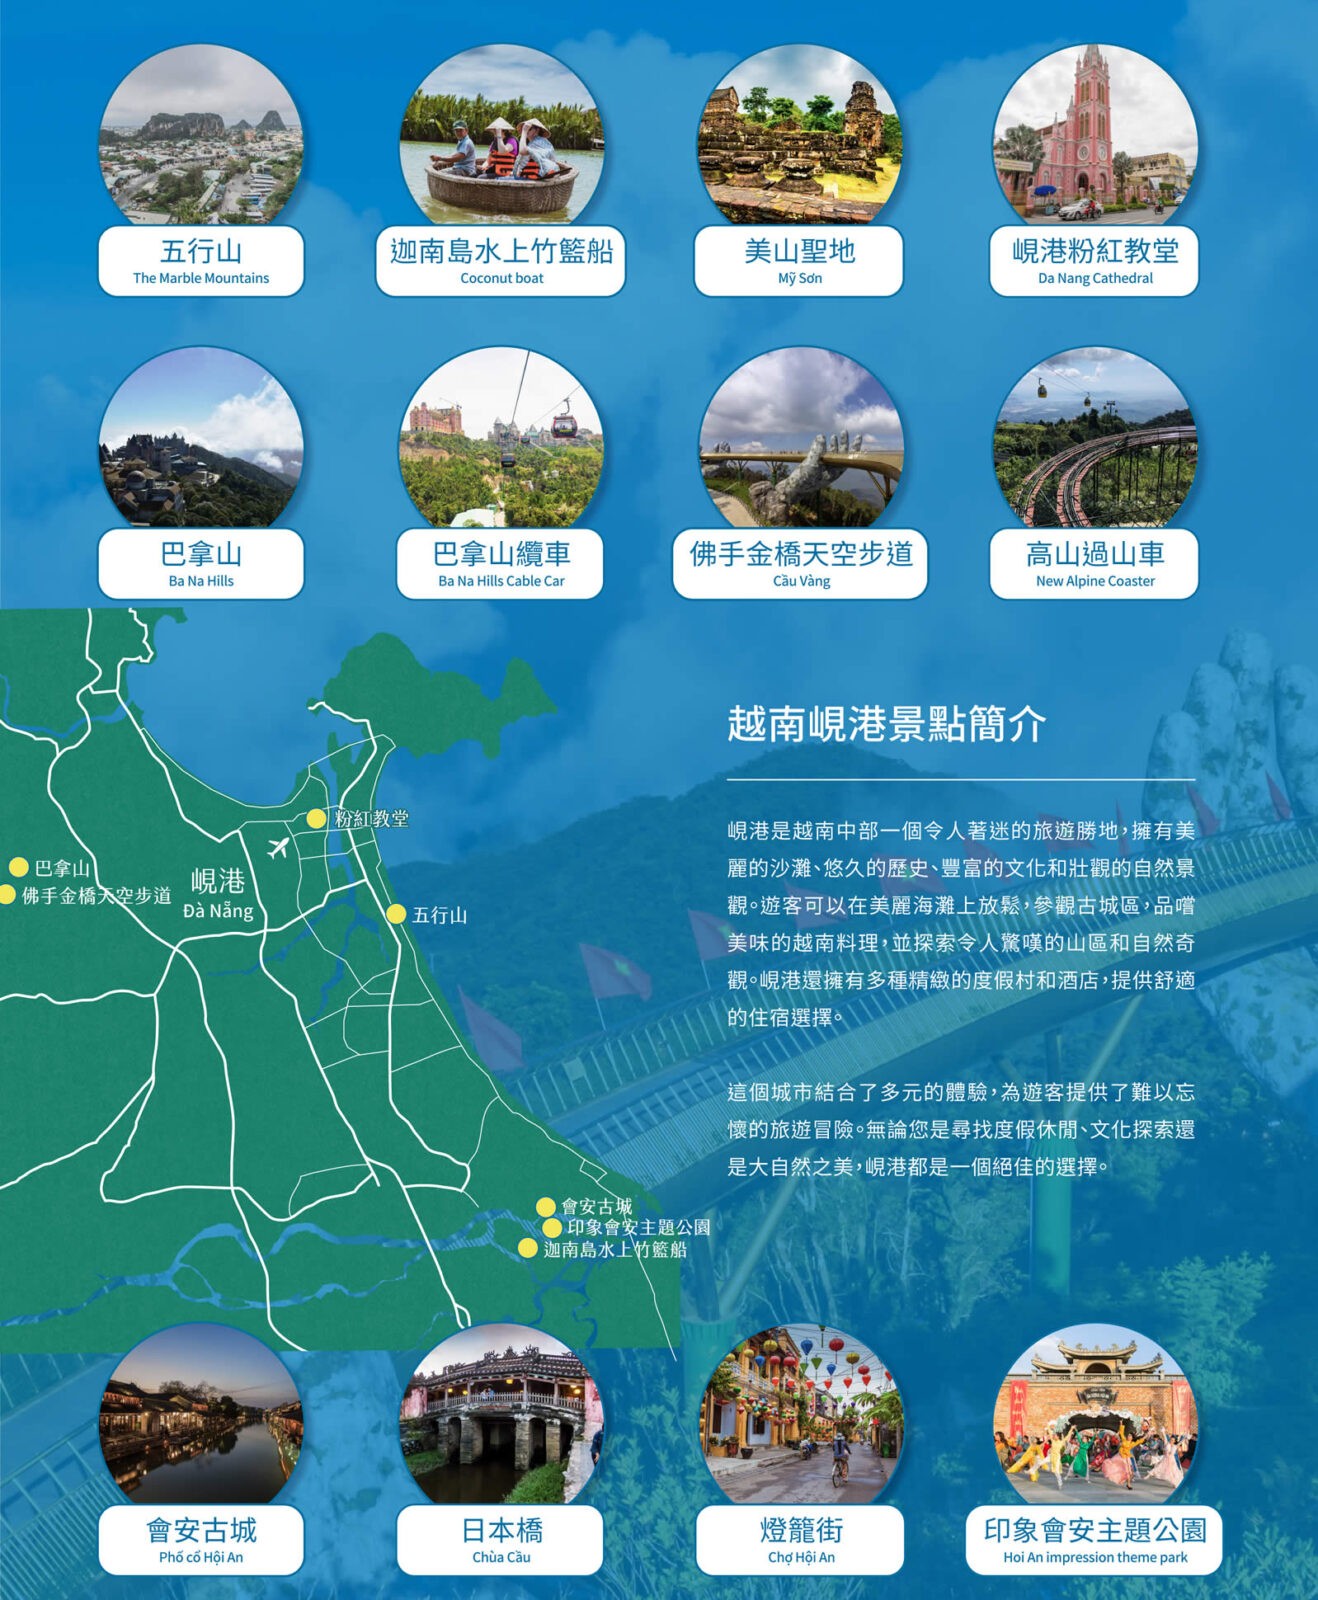 越南峴港五日遊-中越經典巡禮,會安古城+佛手金橋+水上竹籃船